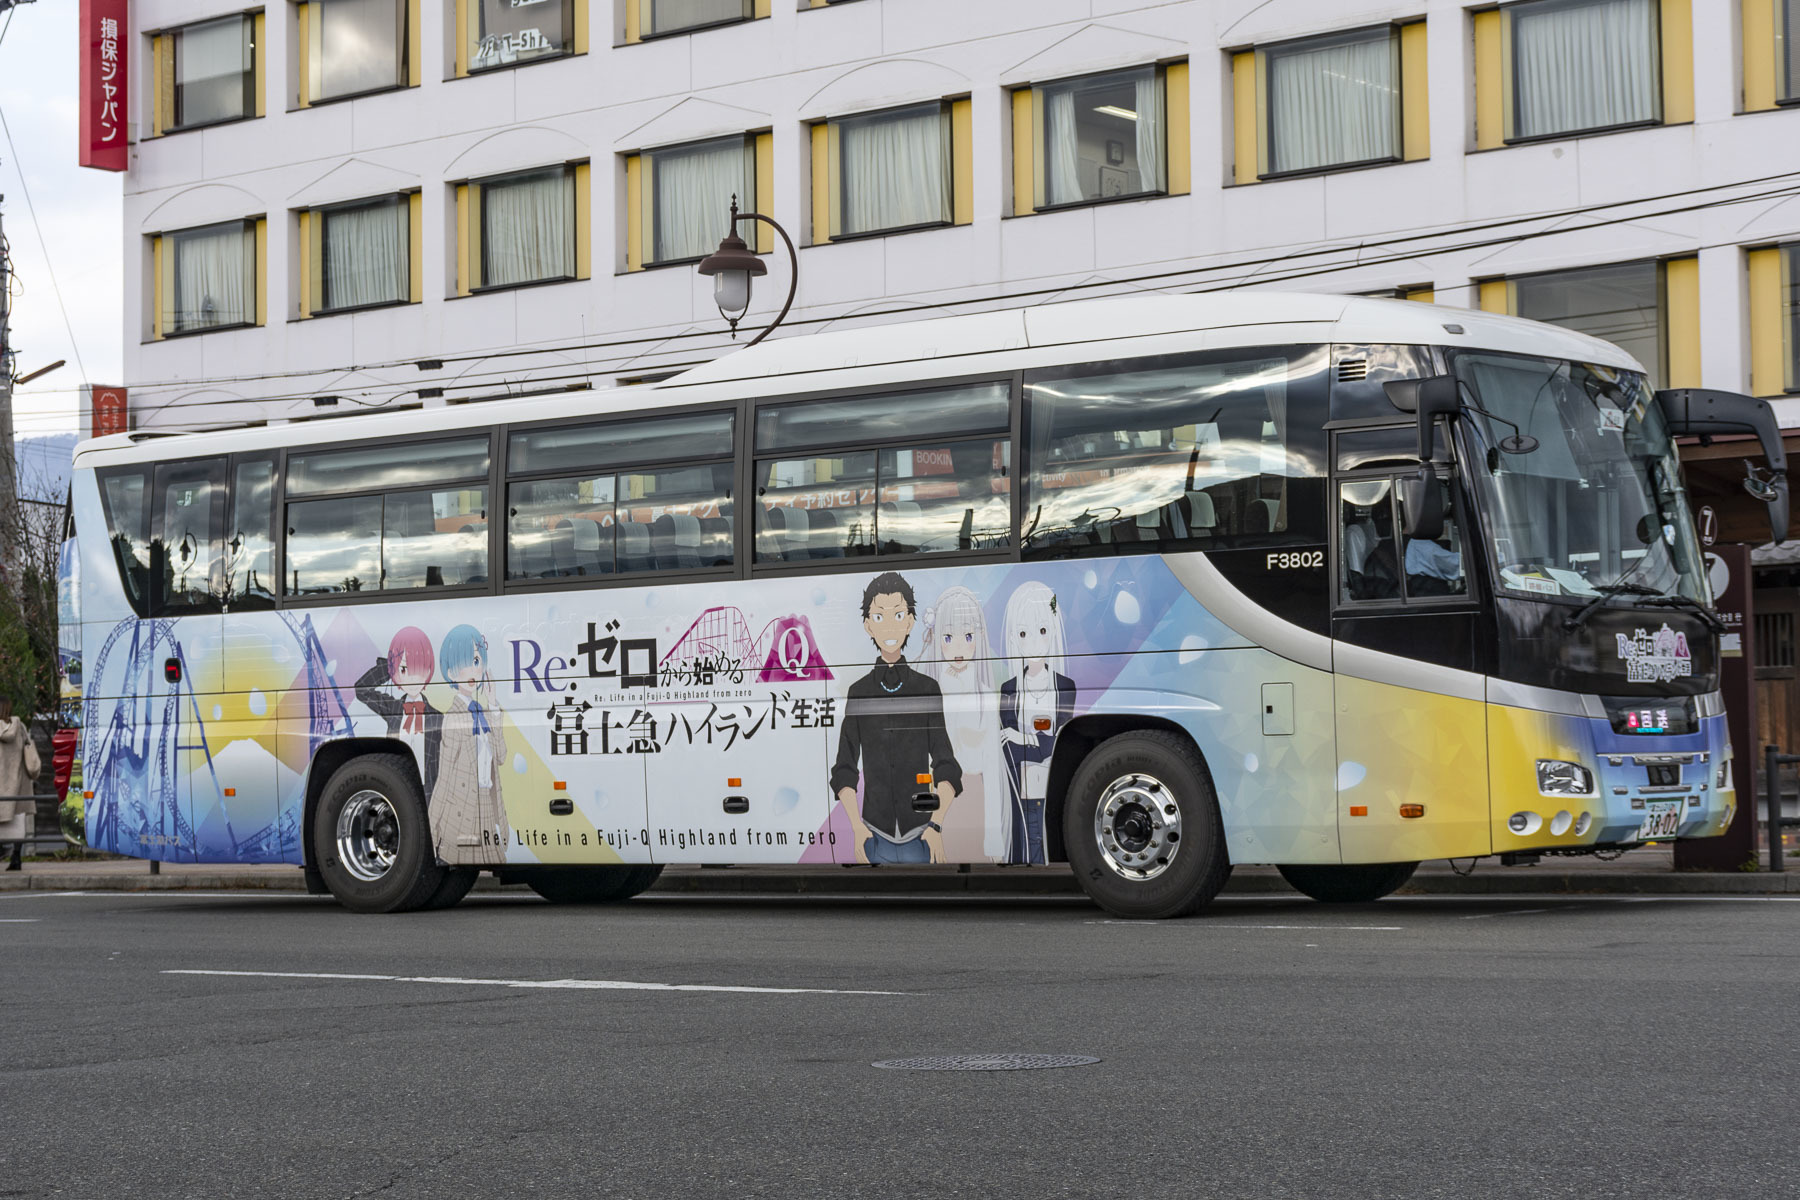 富士急バス / Re:ゼロから始める富士急ハイランド生活ラッピングバス_d0226909_12422355.jpg